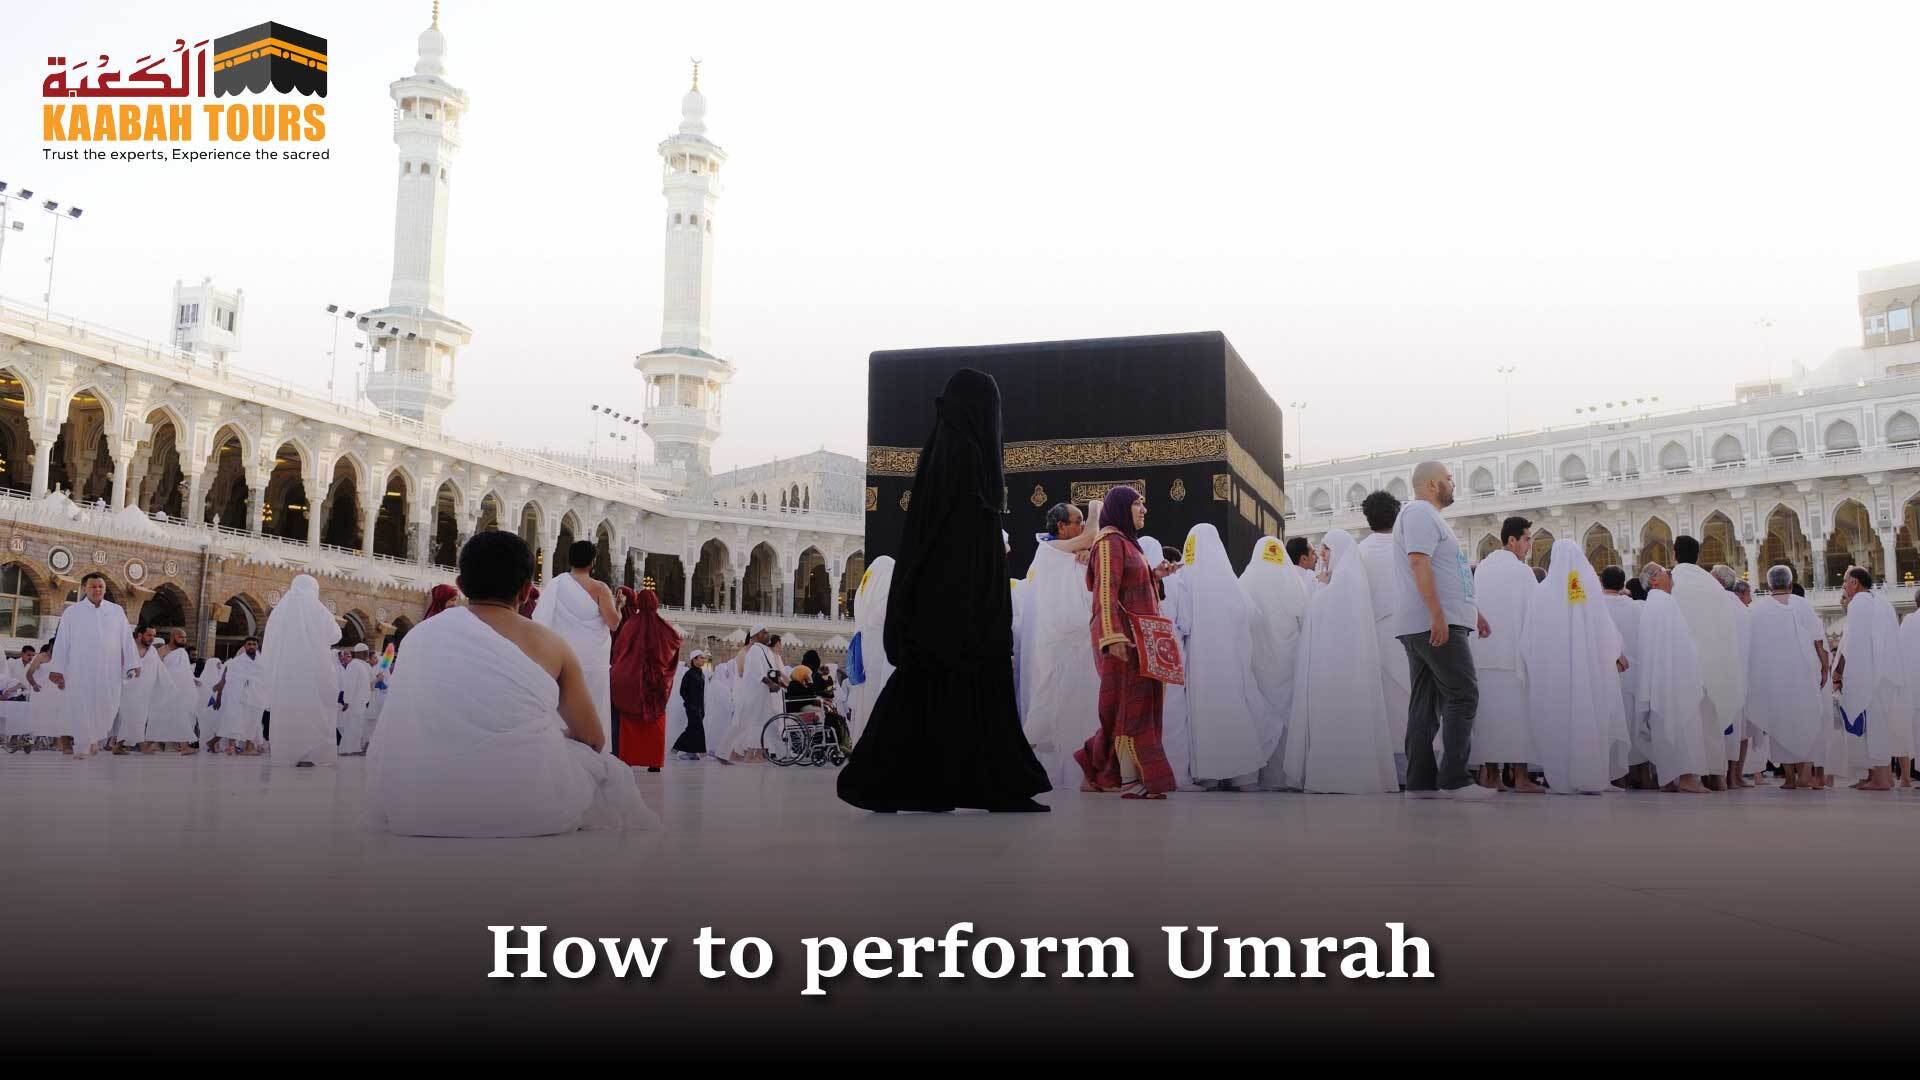 Perform Umrah process